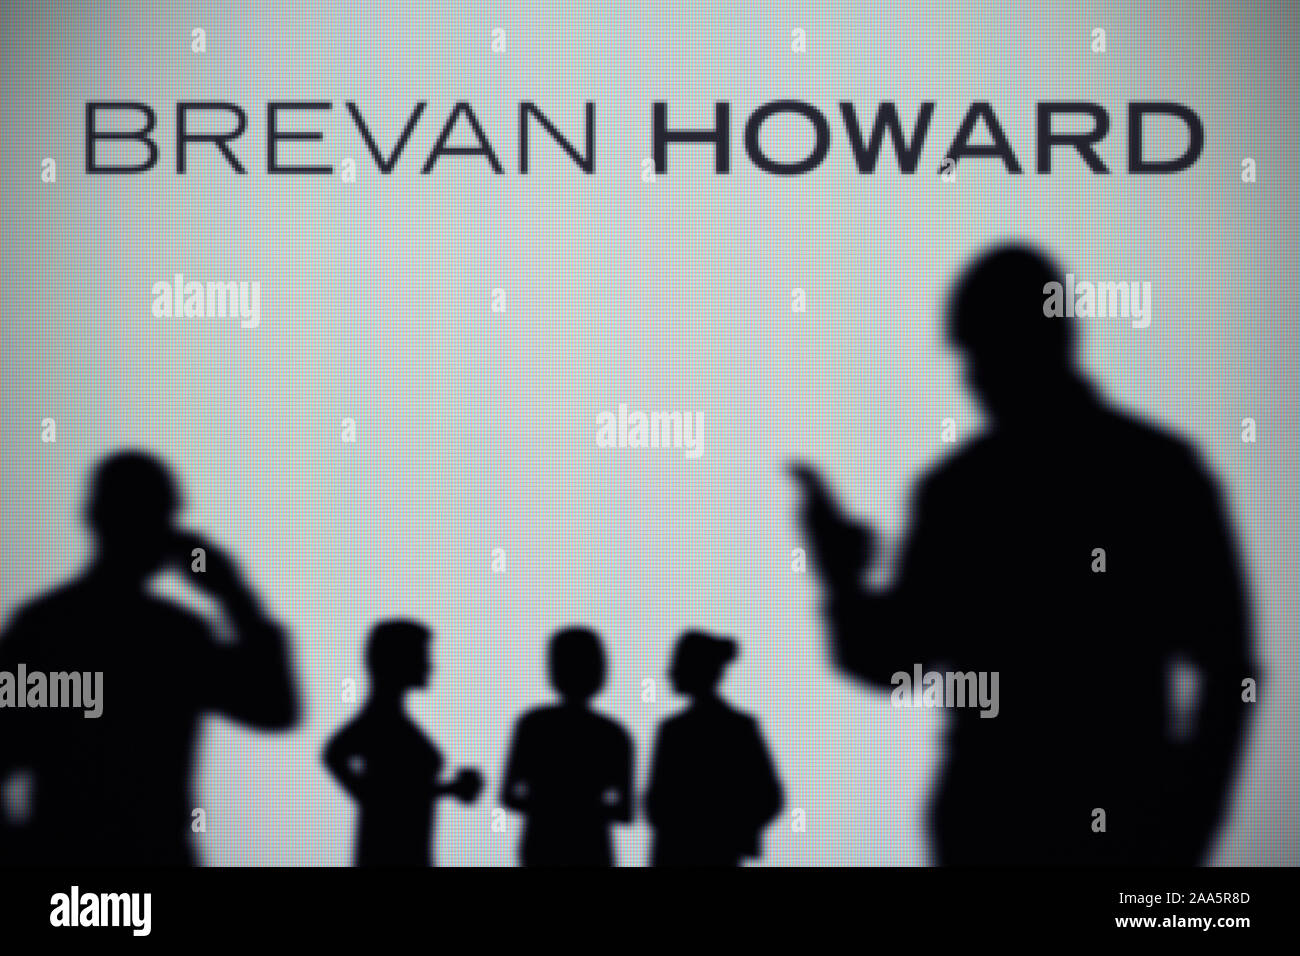 El Brevan Howard logo es visto en una pantalla LED en el fondo mientras una silueta persona utiliza un smartphone (uso Editorial solamente) Foto de stock